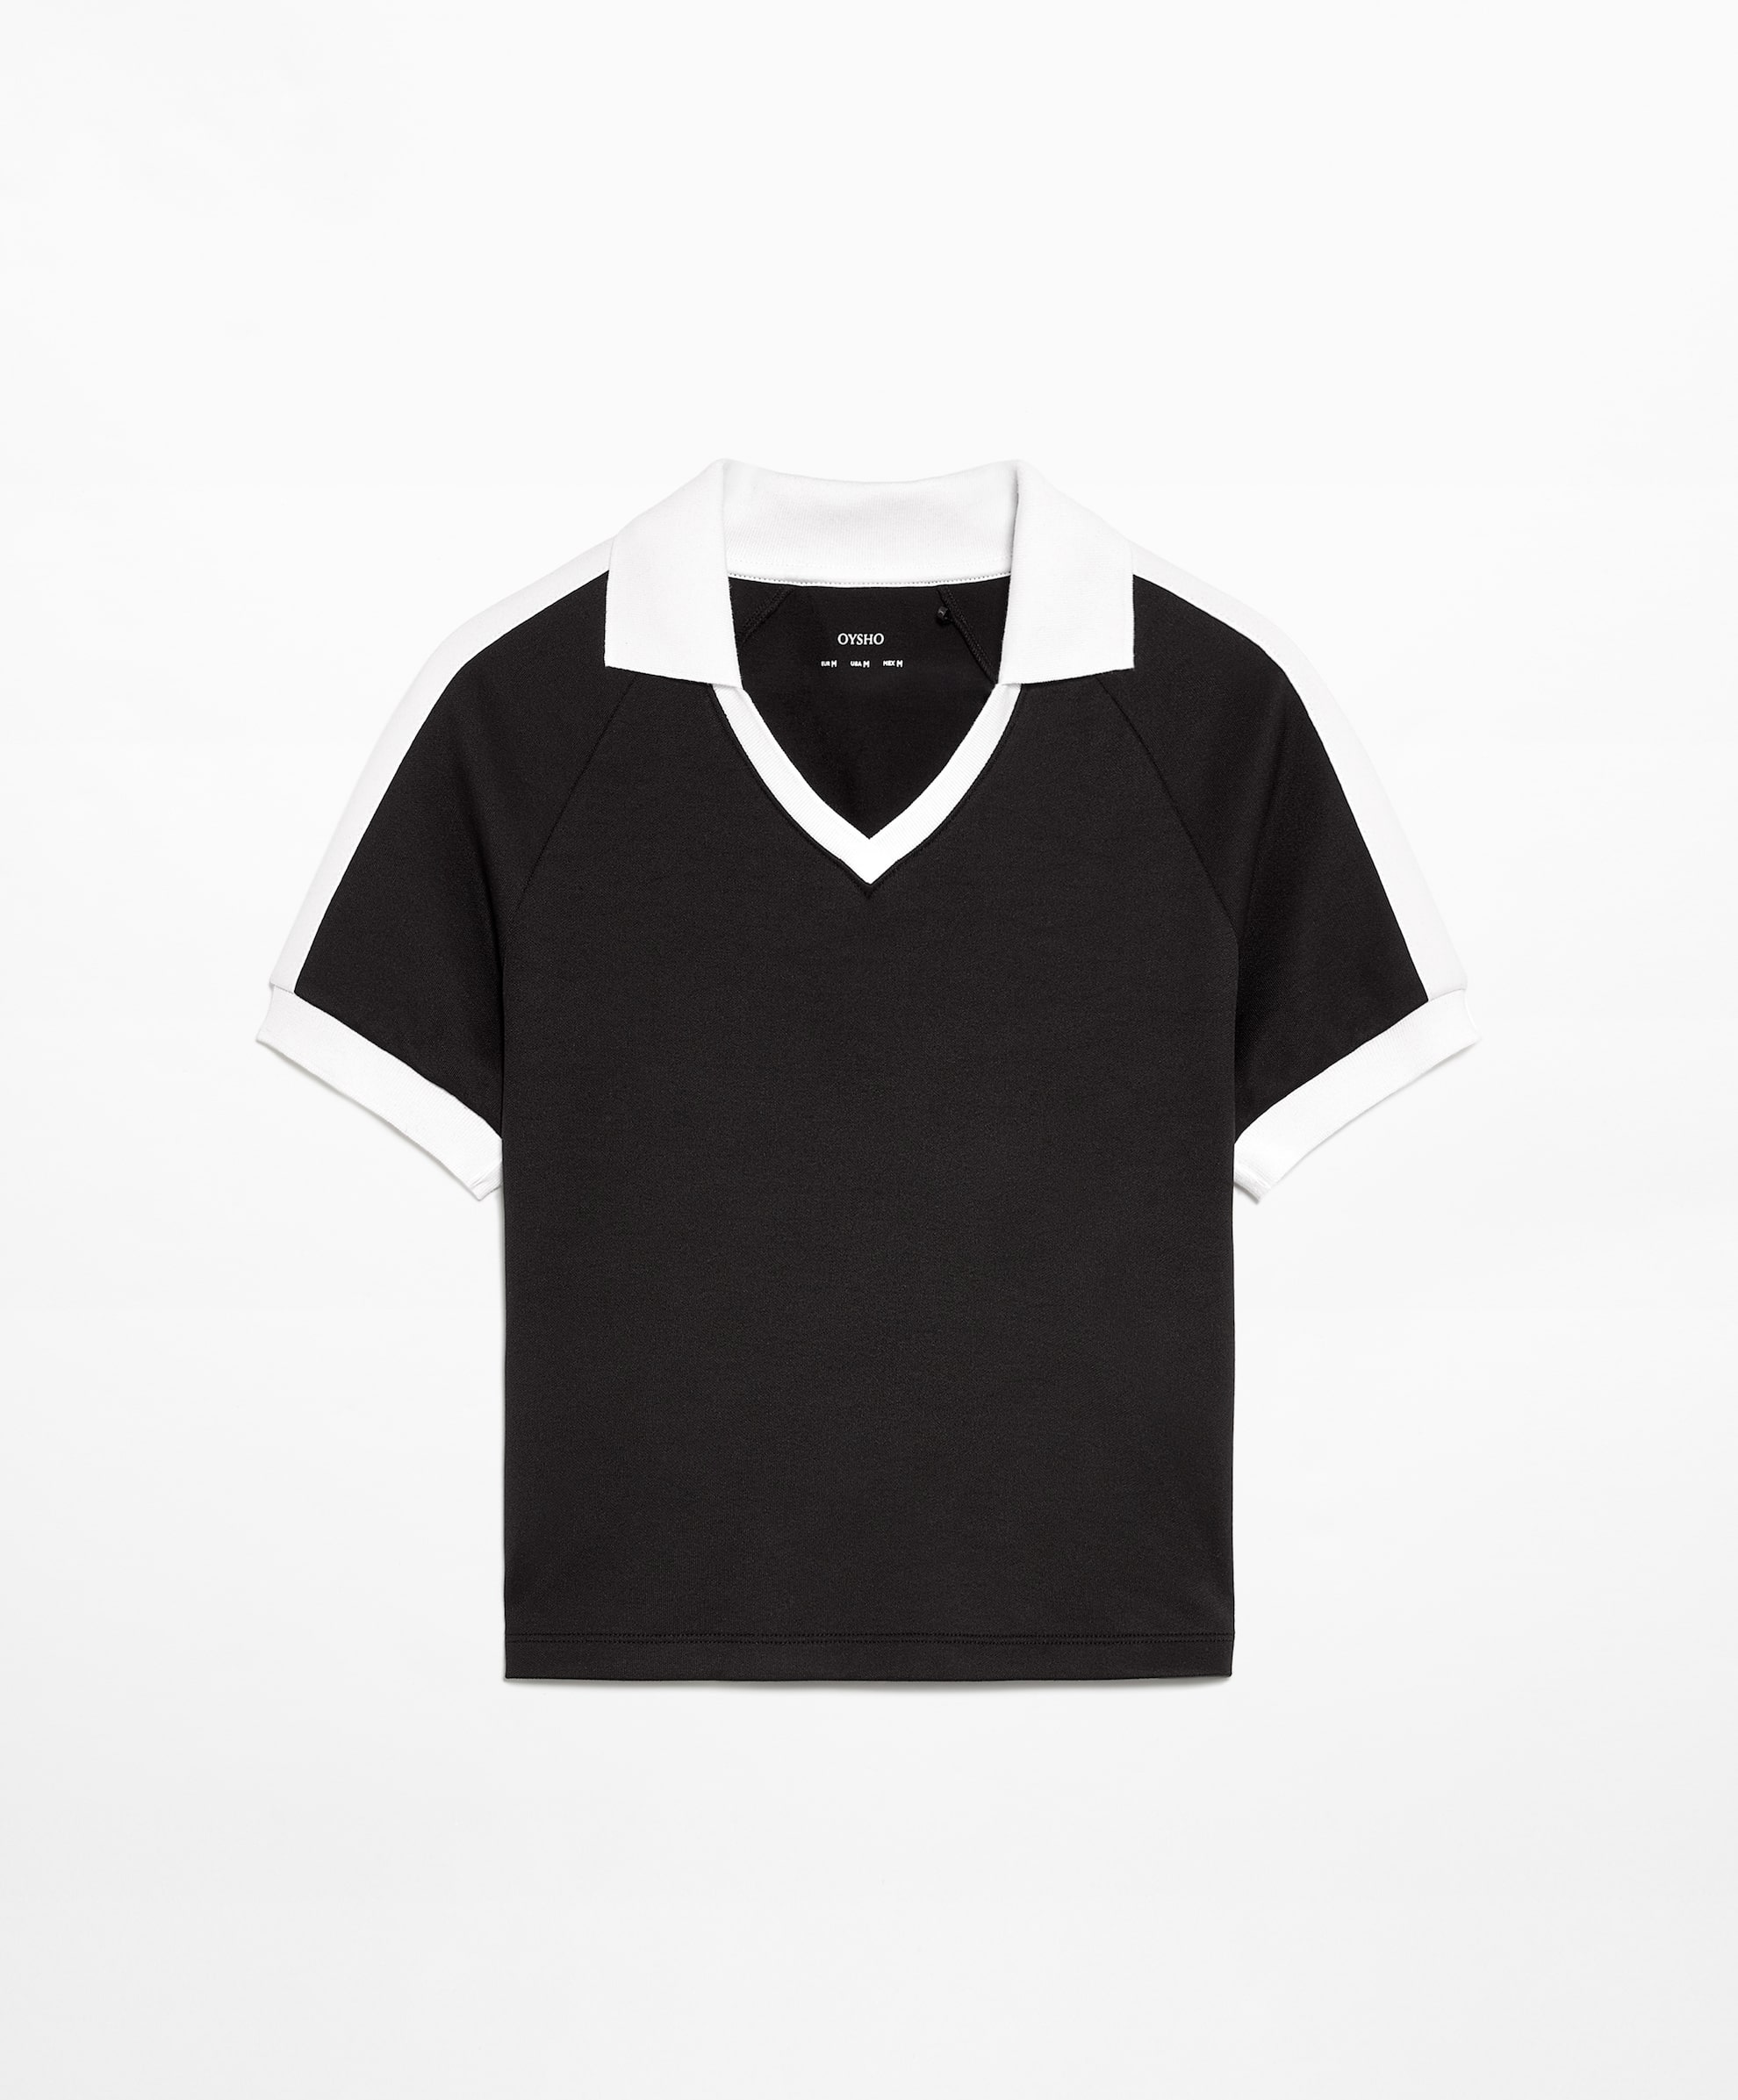 Рубашка-поло Oysho Side Stripe Short-sleeved Crop With Cotton, черный кардиган в полоску с короткими рукавами